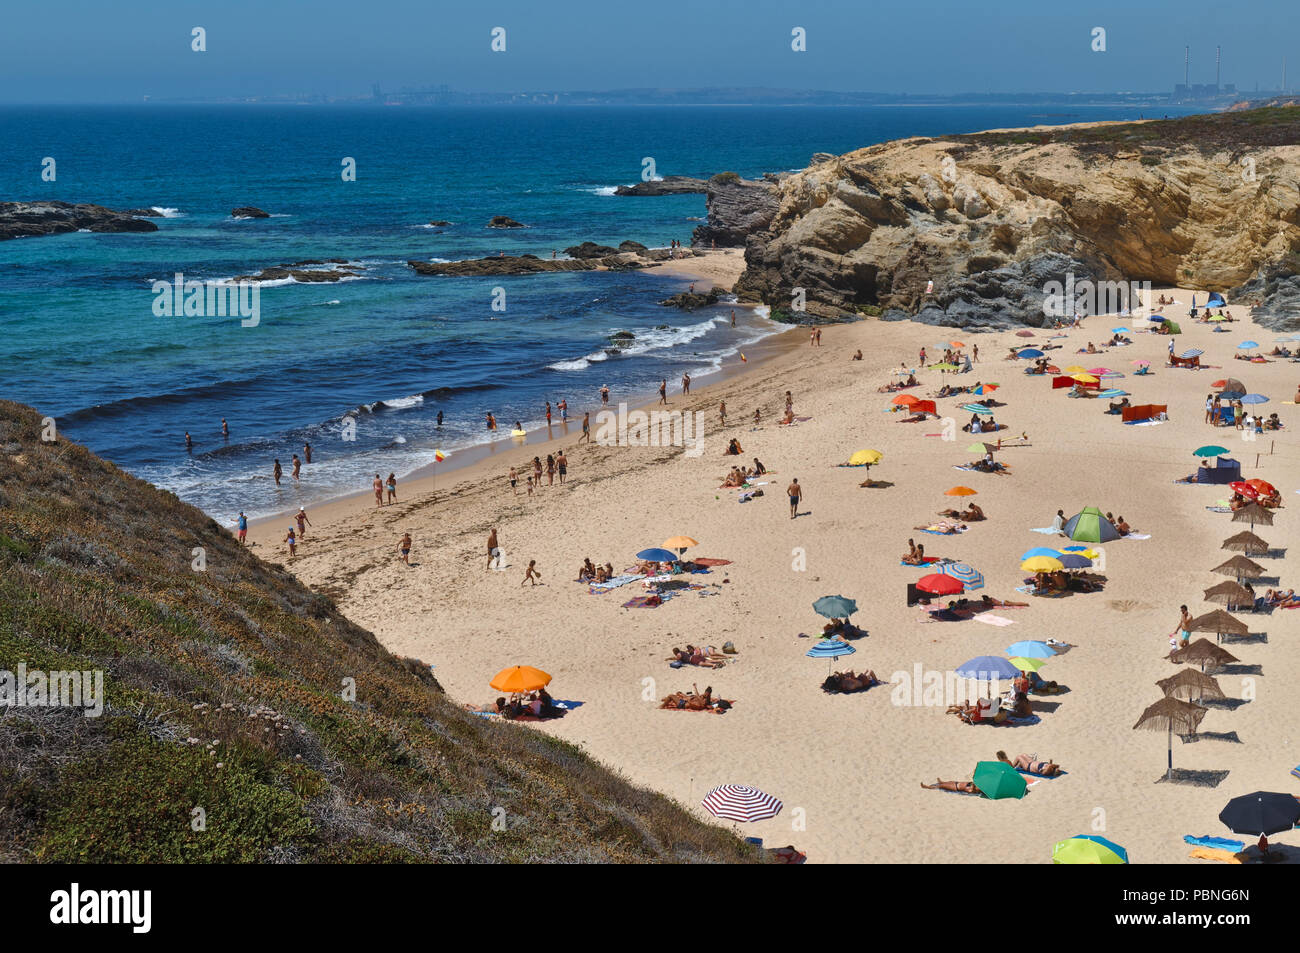 Overview of Praia Grande in Porto Covo during summer season. Portugal Stock Photo